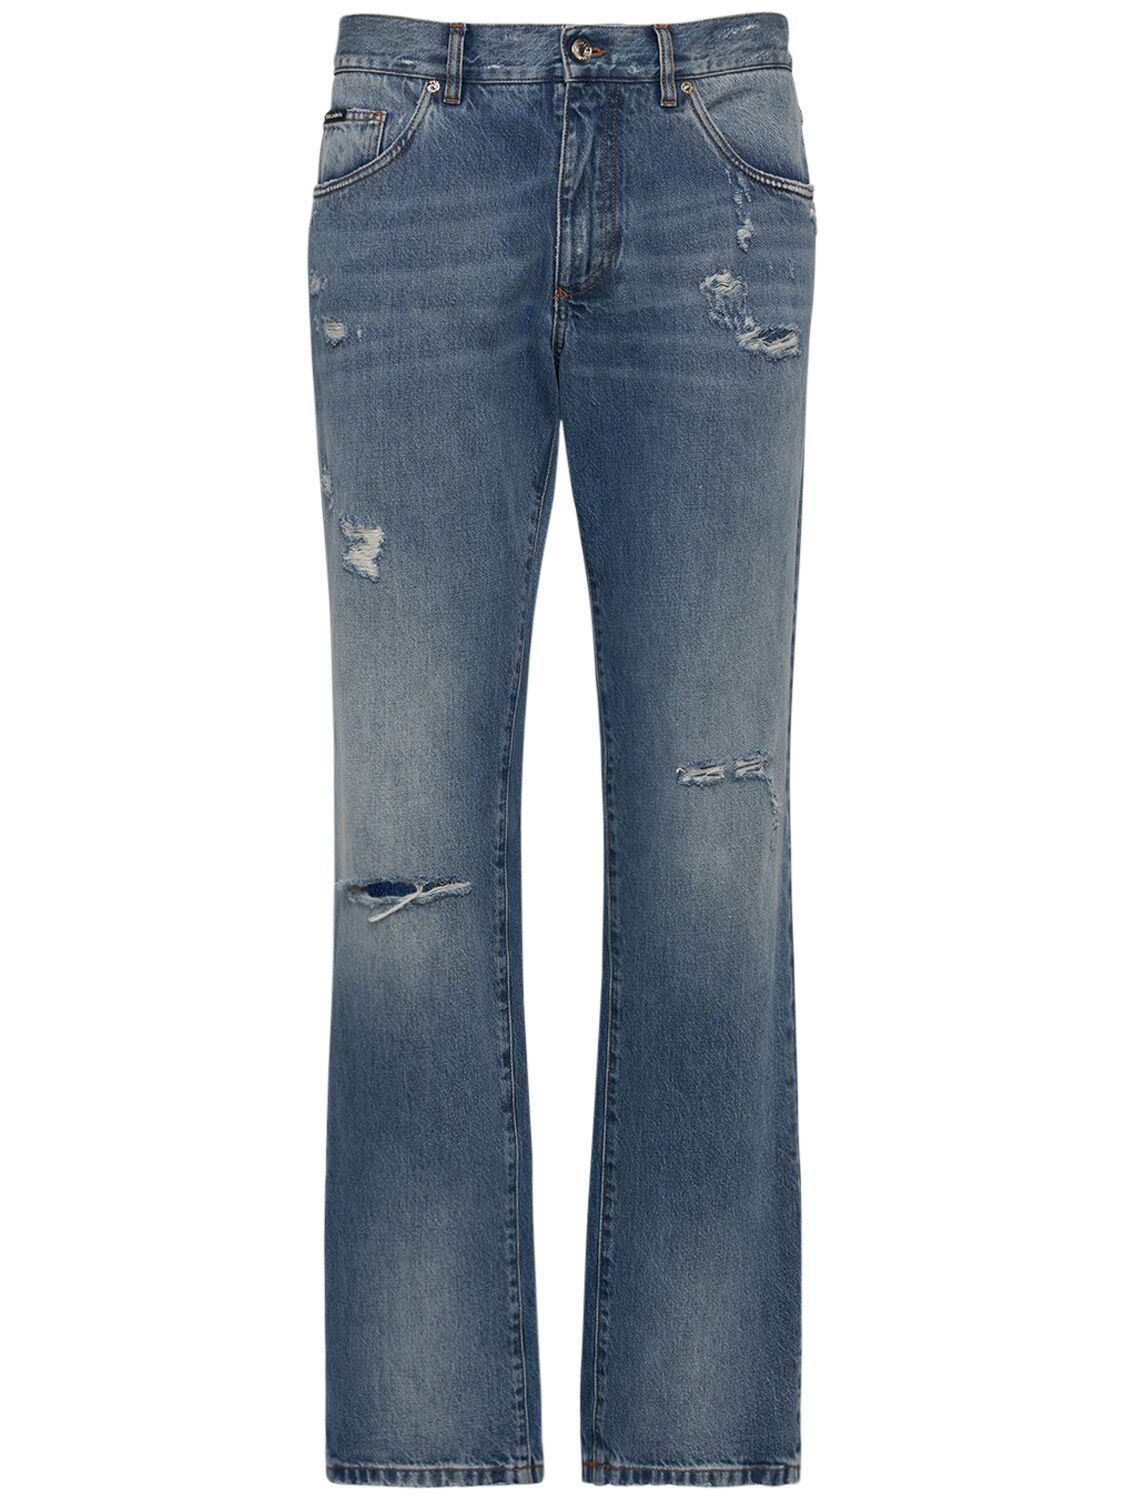 Distressed Denim Five Pocket Jeans